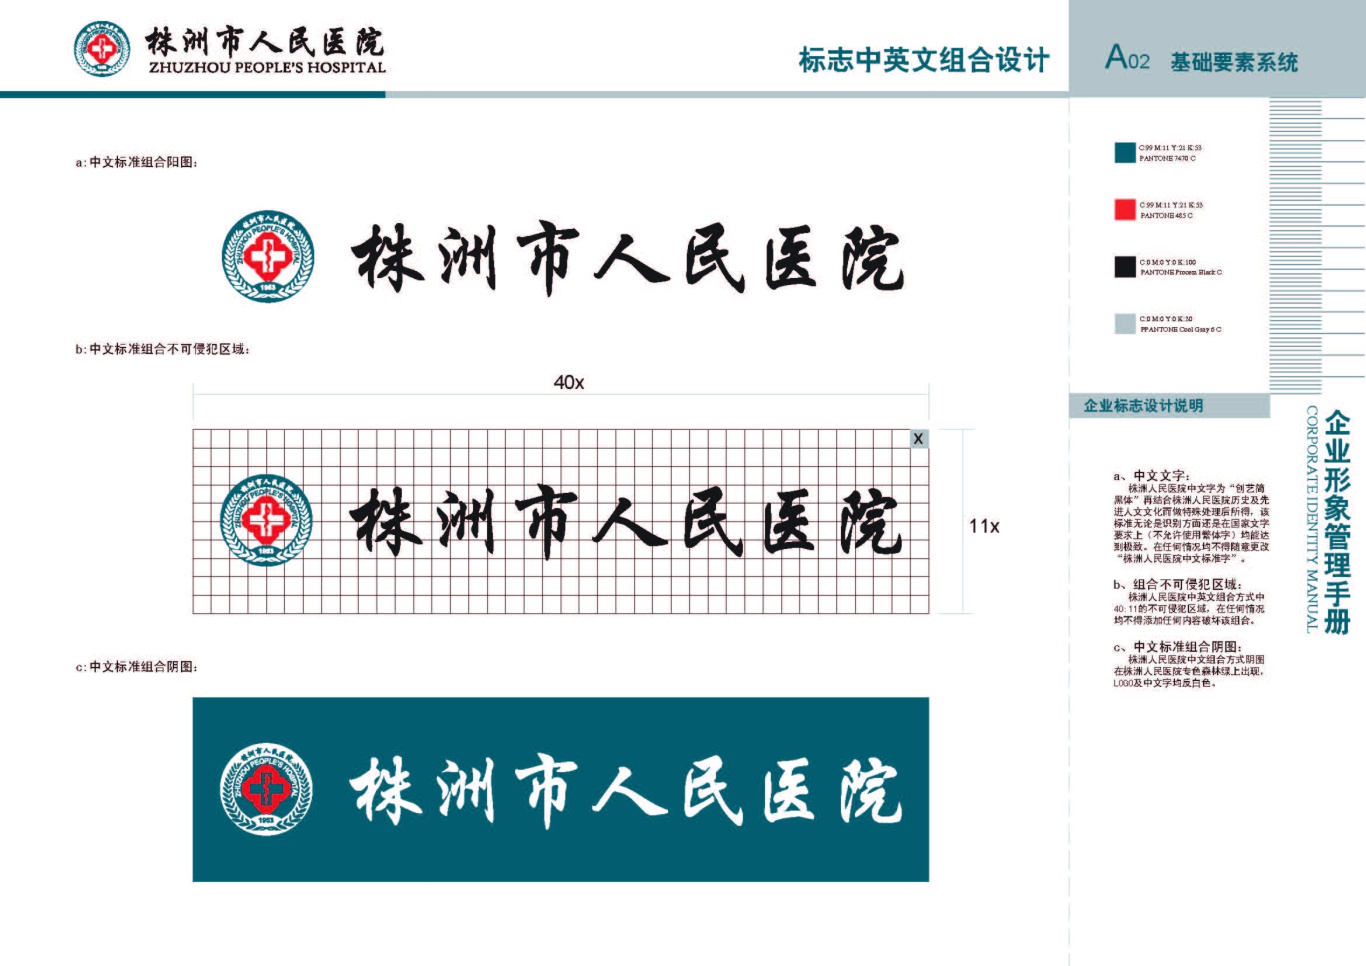 株洲市人民医院vis手册设计项目图6